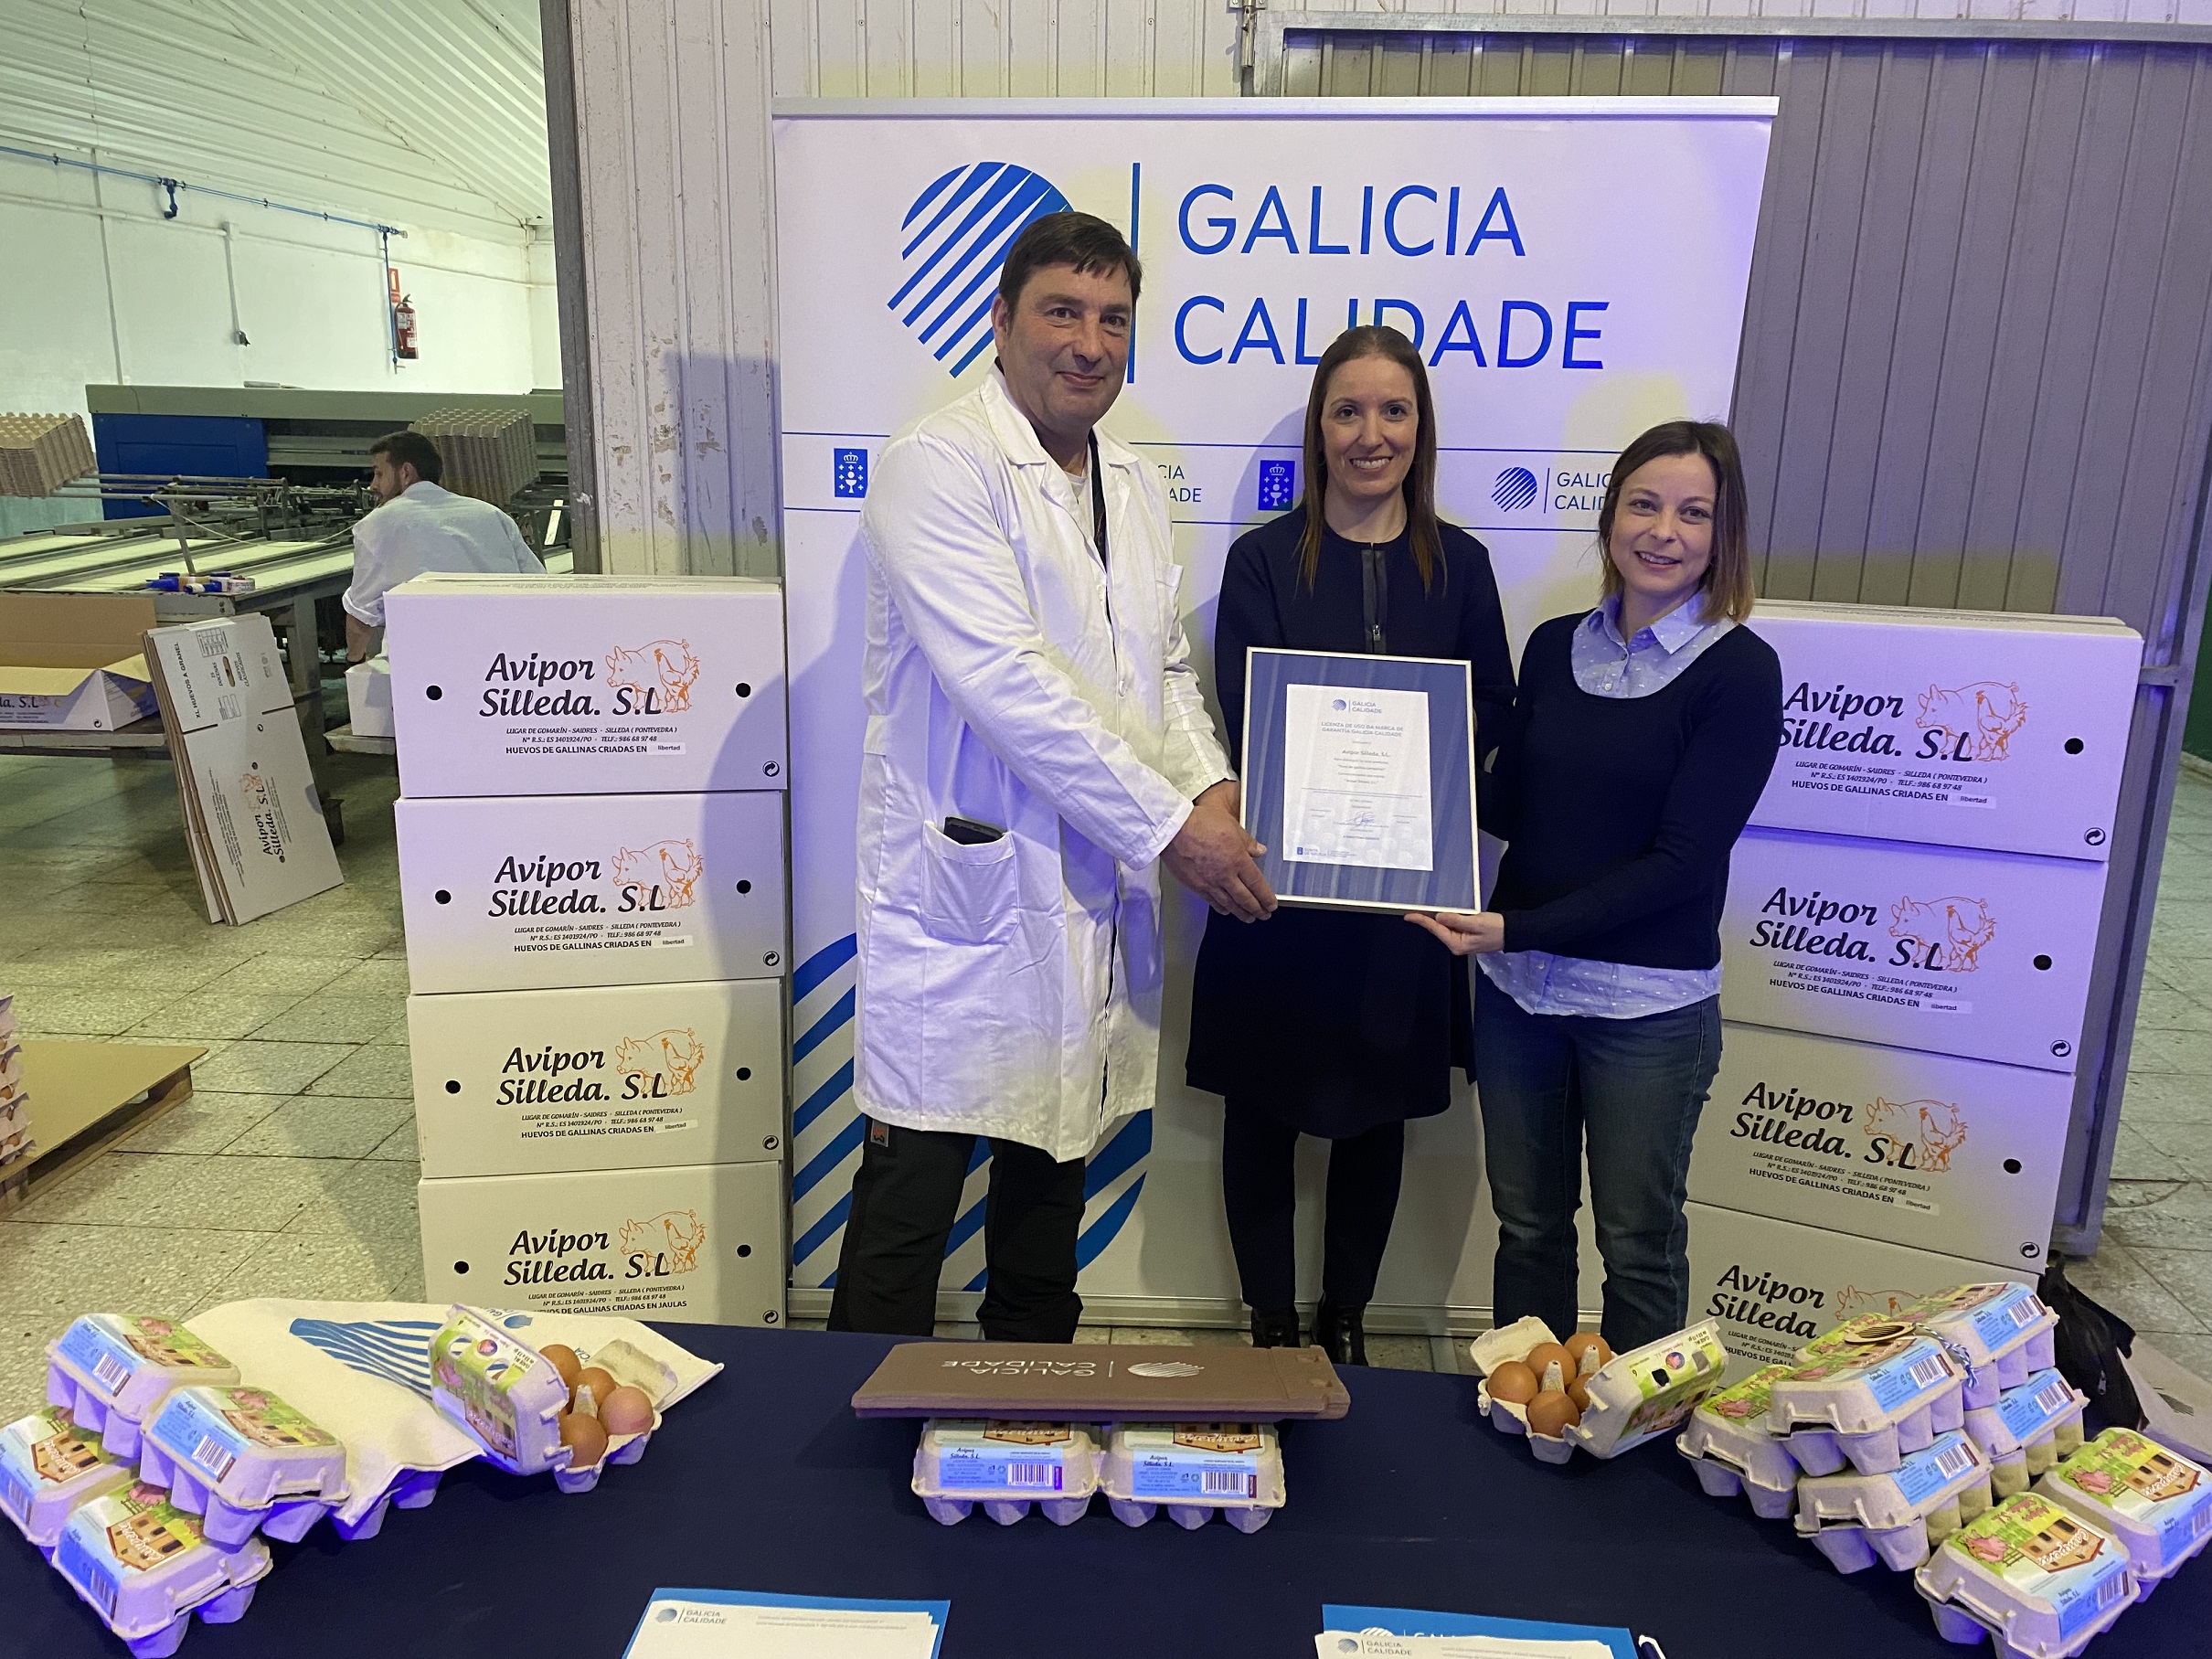 Image 1 of article Galicia Calidade certifica xa os produtos da empresa de Silleda Avipor